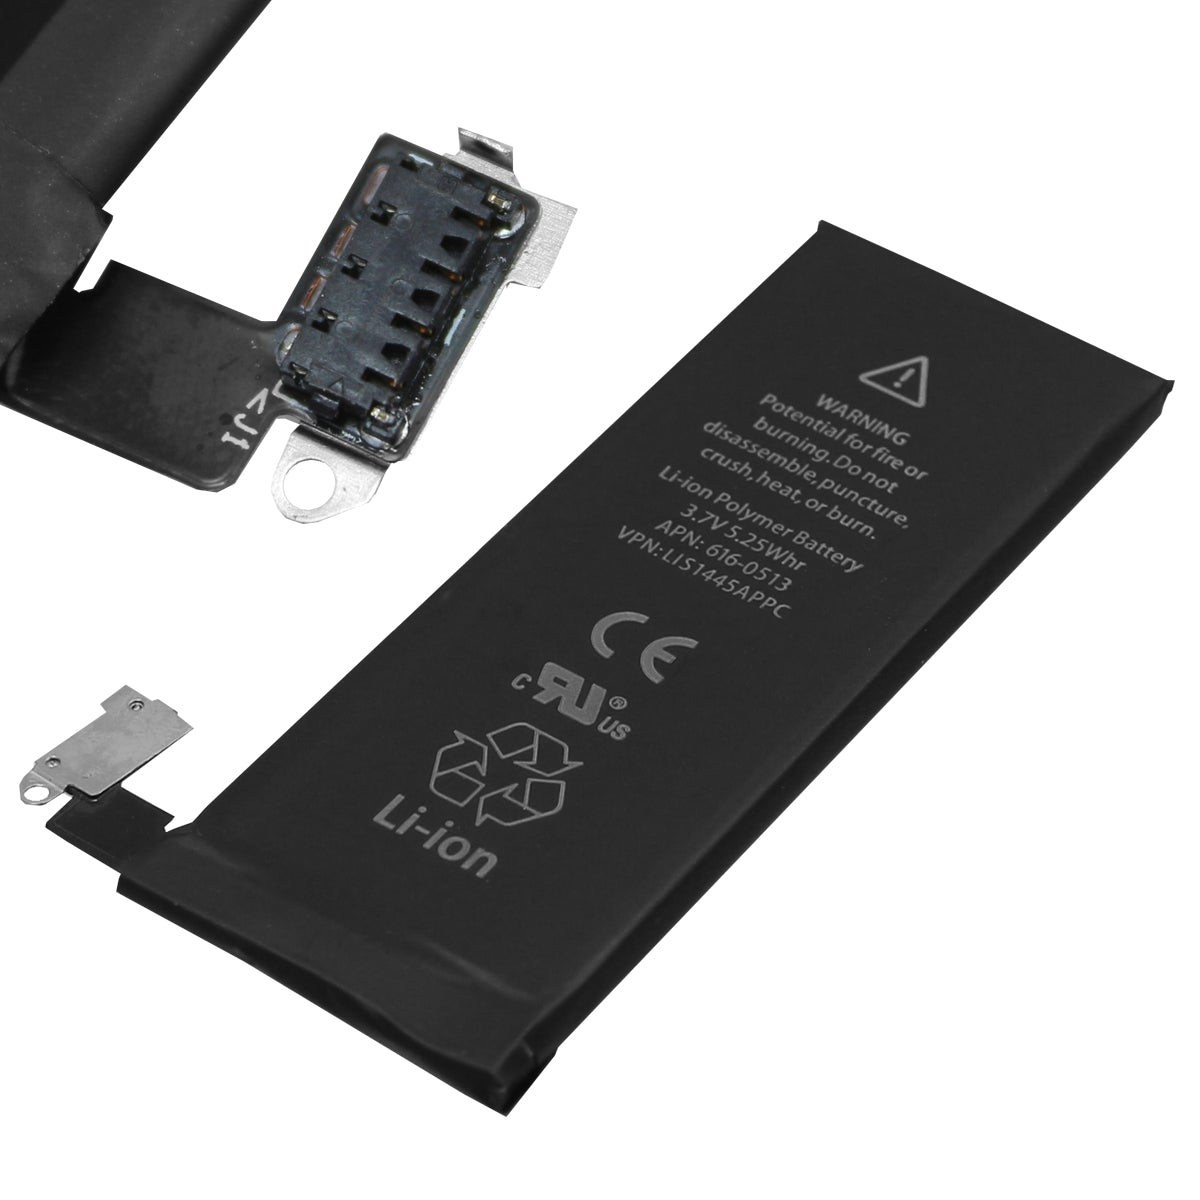 Ersetzen Sie den Akku Ihres iPhone 4s mit diesem hochwertigen Ersatzakku. inklusive dem mitgelieferten Klebestreifen und der Sim-Karten-Pin-Nadel.